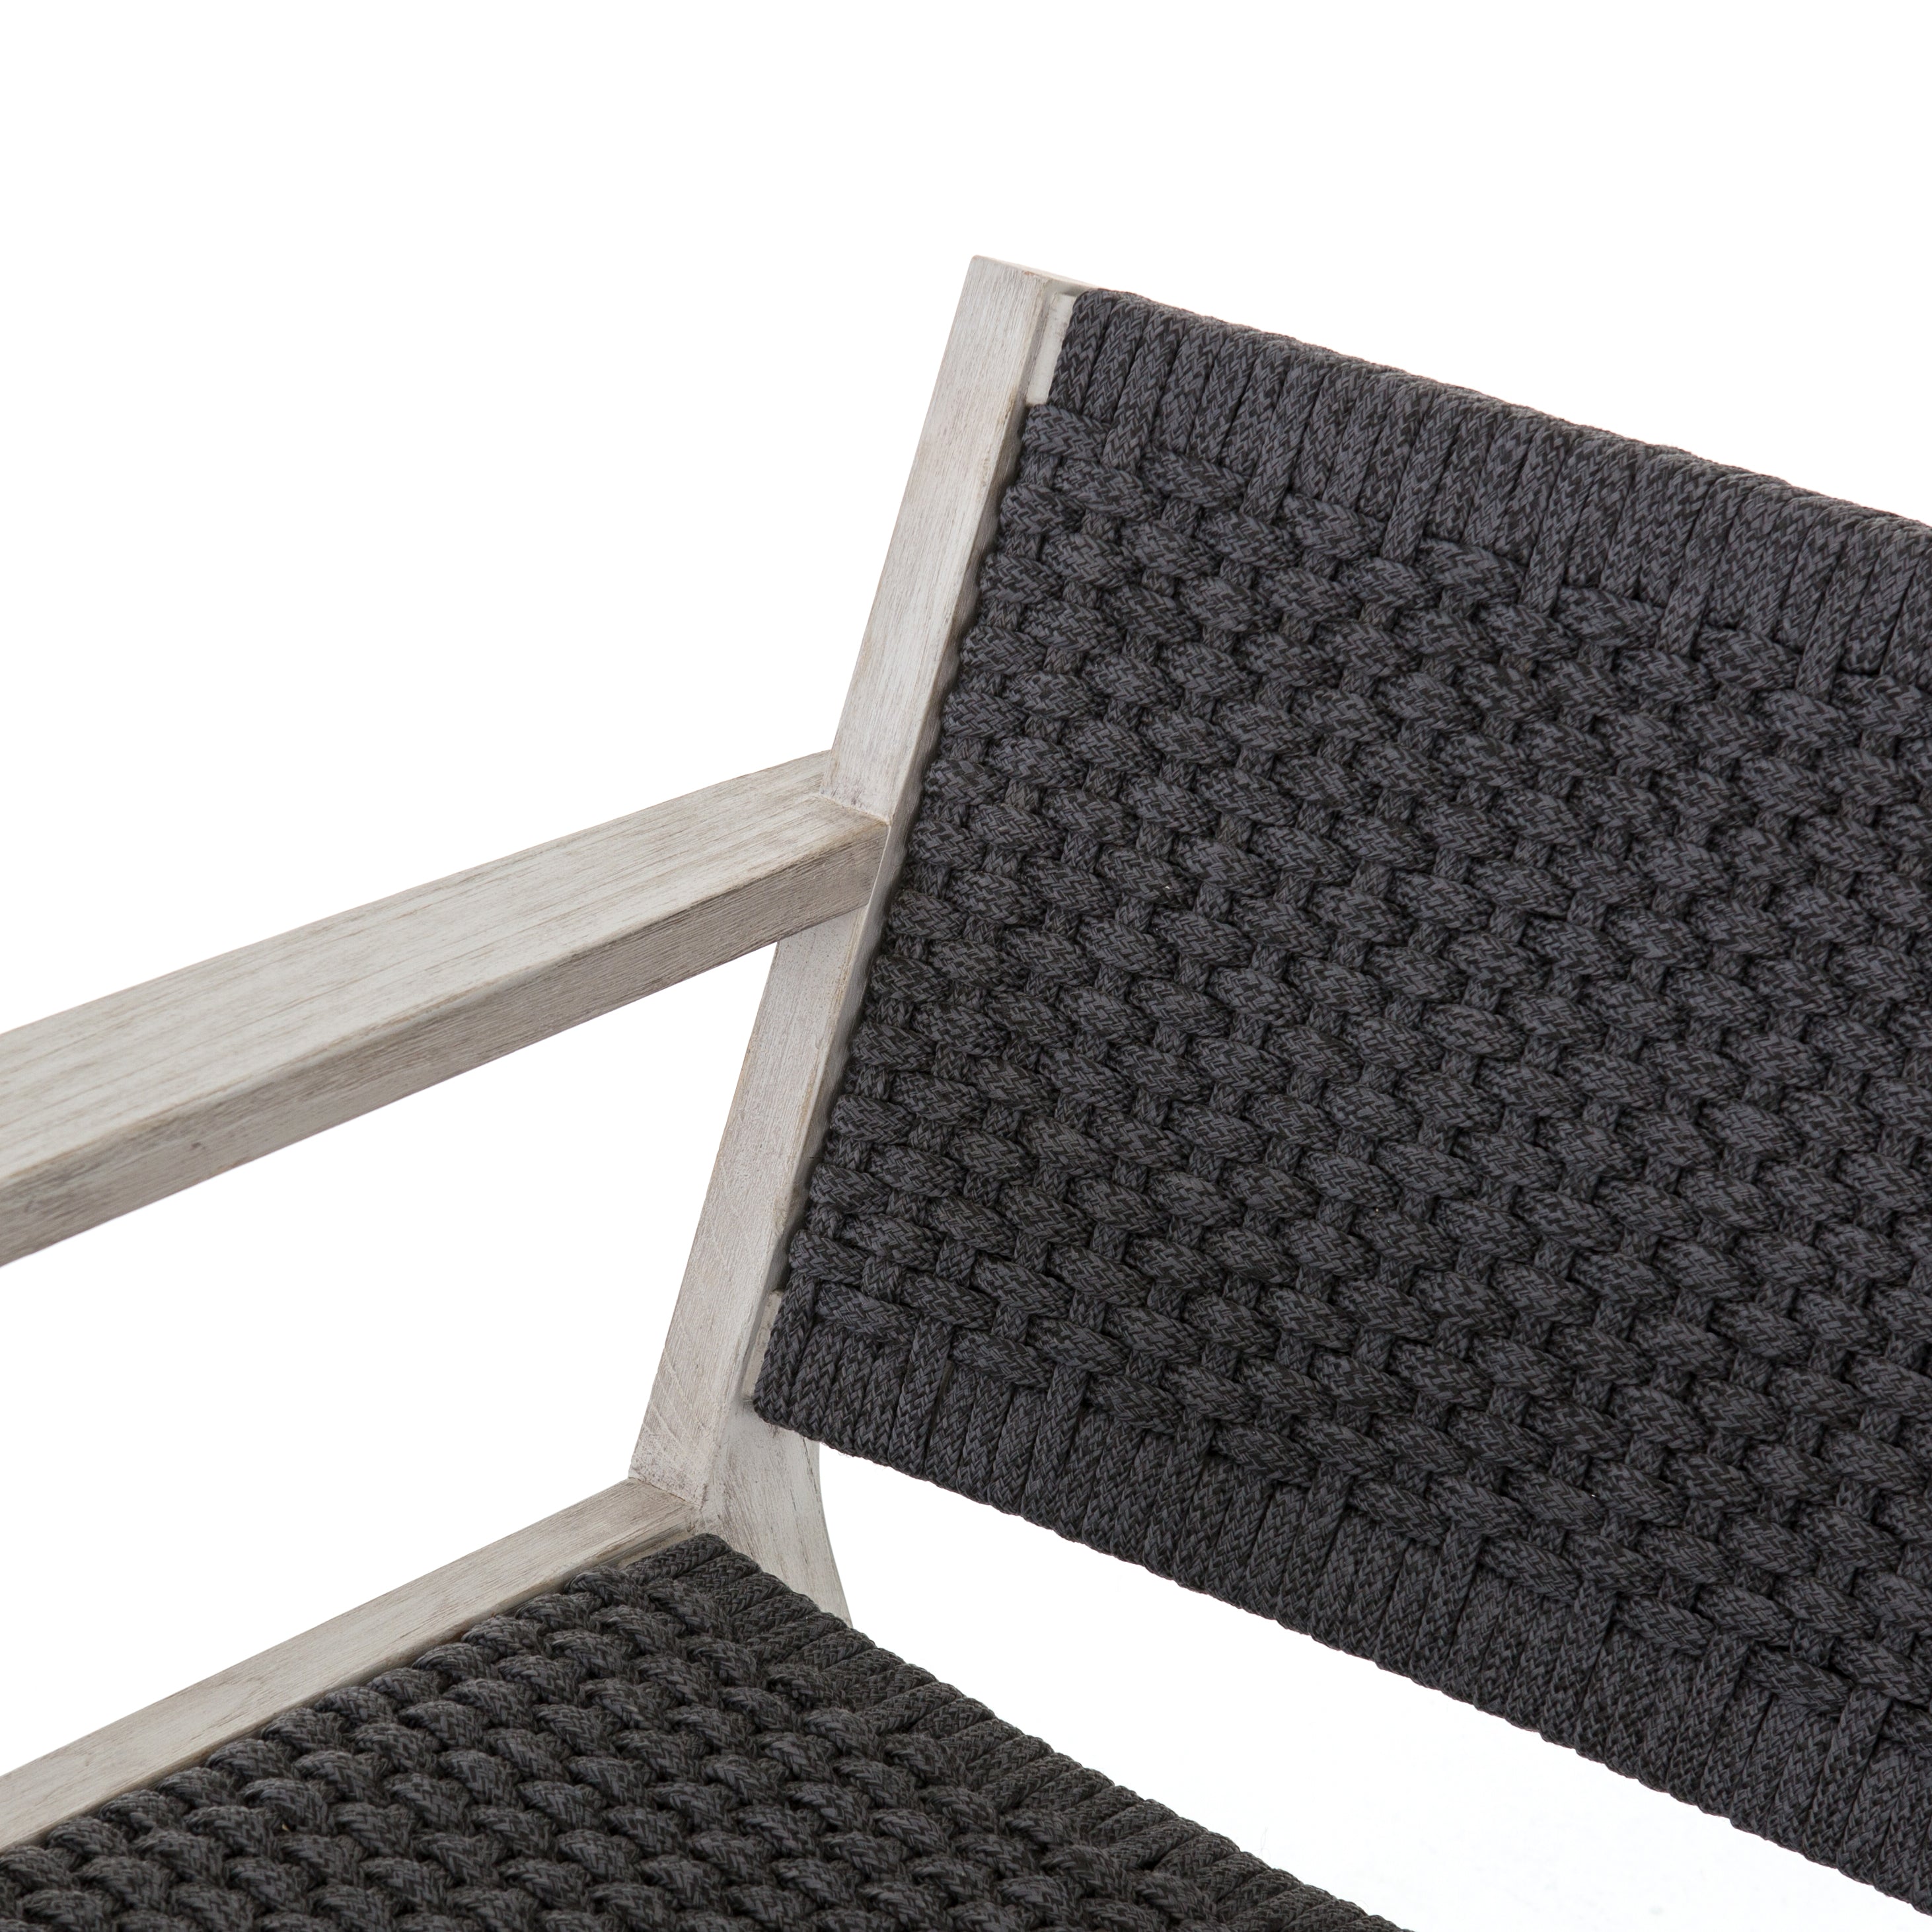 Delano Chair - StyleMeGHD - Modern Home Decor